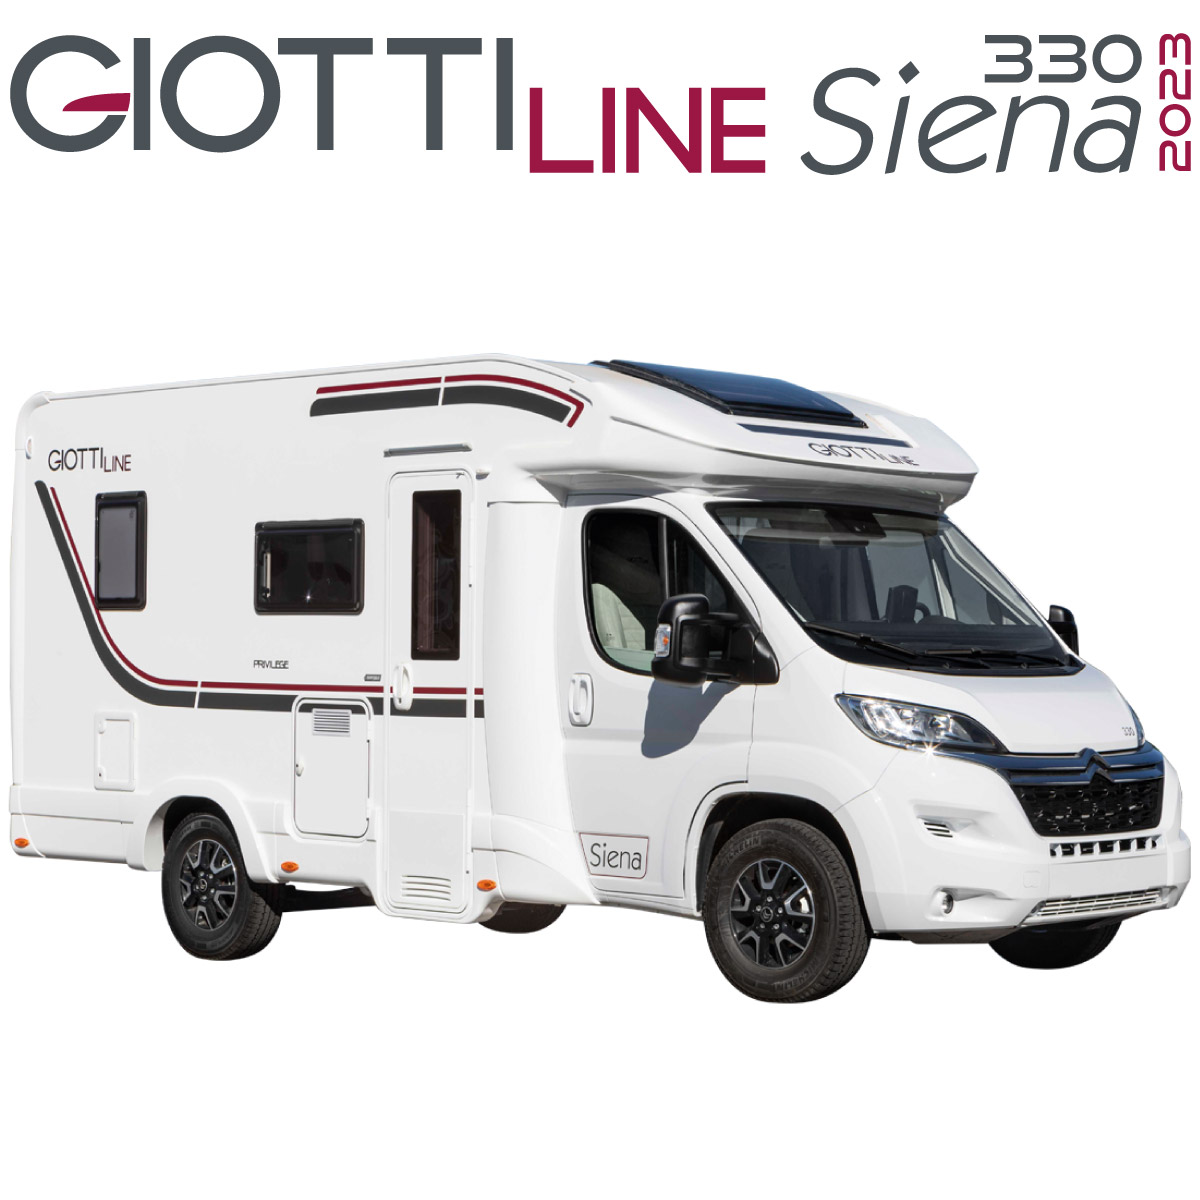 GiottiLine Siena 330 2023 en Autocaravanas Cantabria Portada